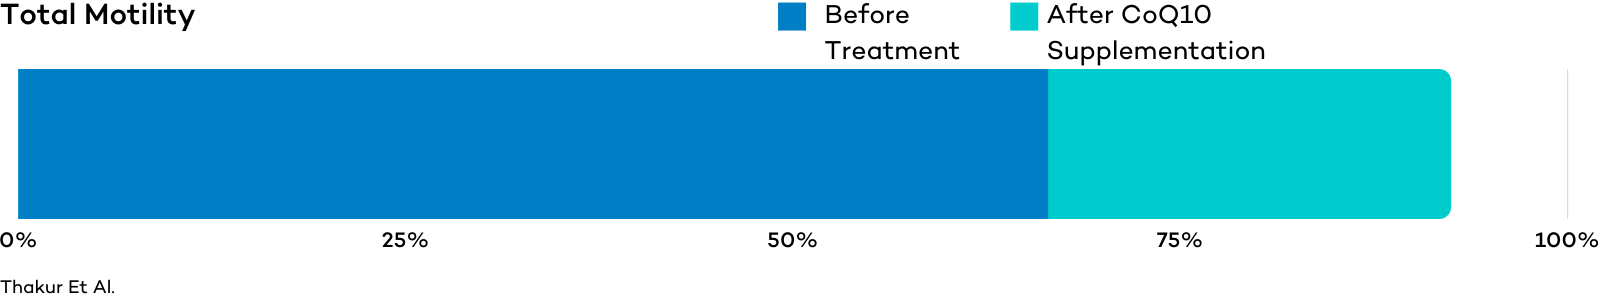 Total Sperm Motility Graph after CoQ10 Treatment - Male Fertility